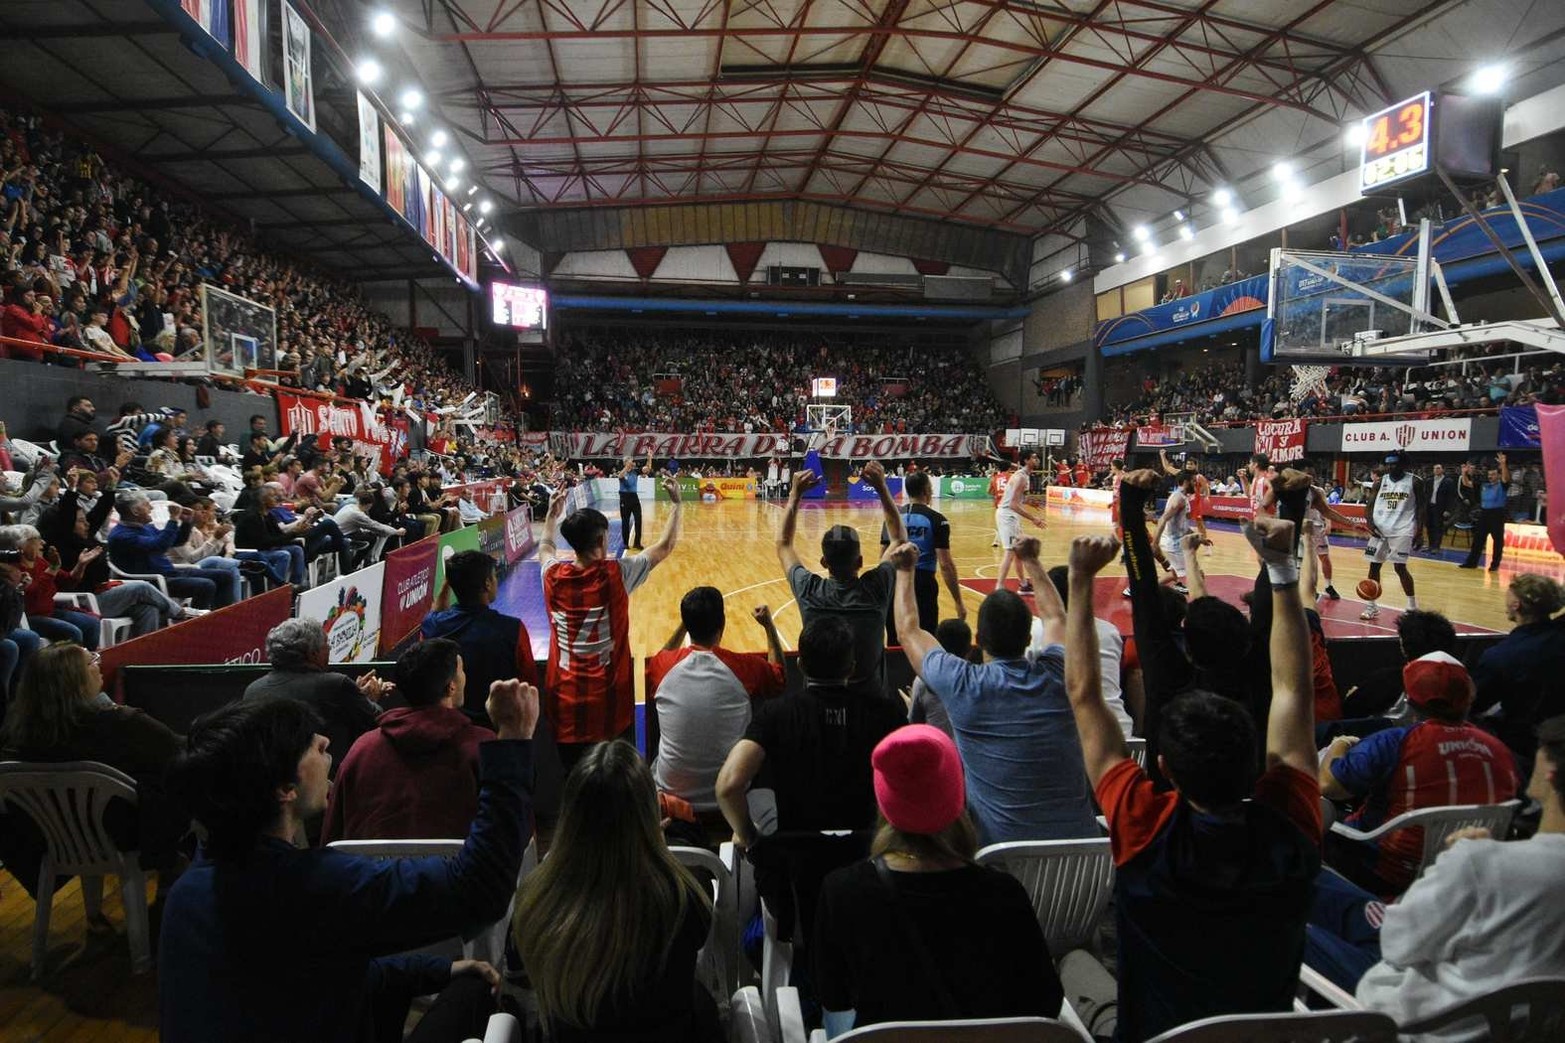 Liga Nacional de básquet. Unión ganó el quinto partido y se quedó con la serie 3 a 2. Derrotó a Hispano de Río Gallegos y mantuvo la categoría en la elite del básquet nacional.